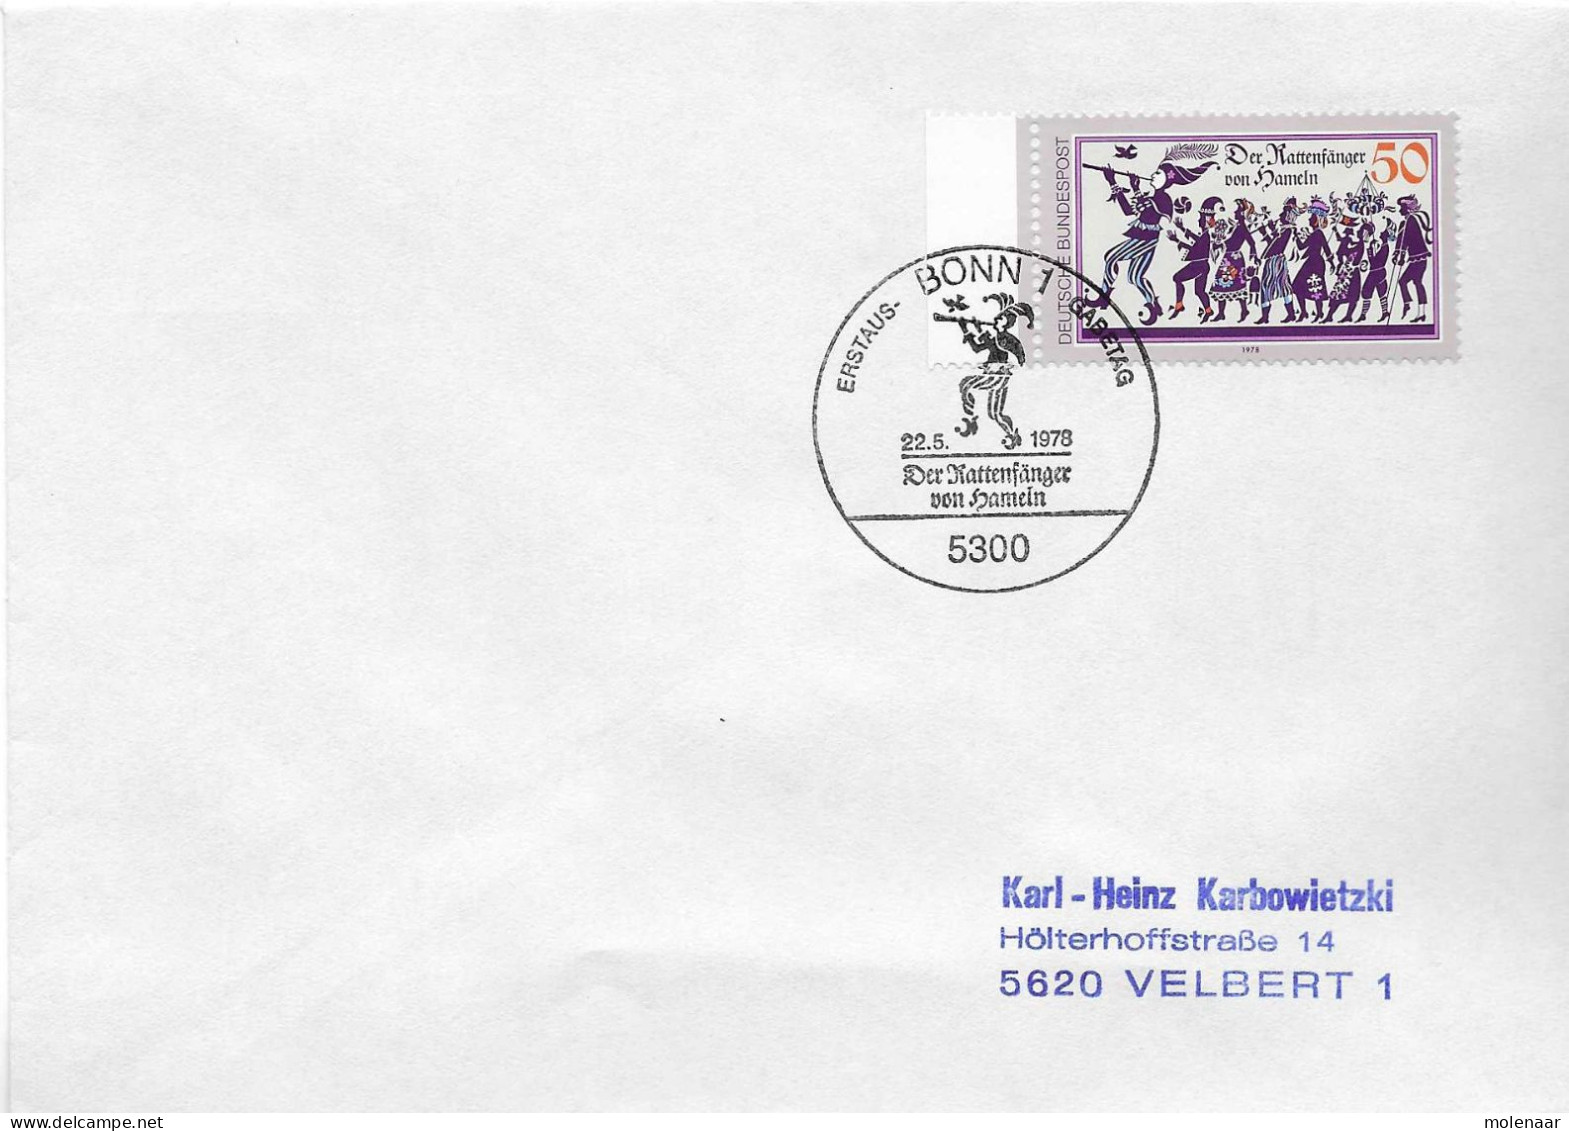 Postzegels > Europa > Duitsland > West-Duitsland > 1970-1979 > Brief Met No. 972 (17367) - Lettres & Documents